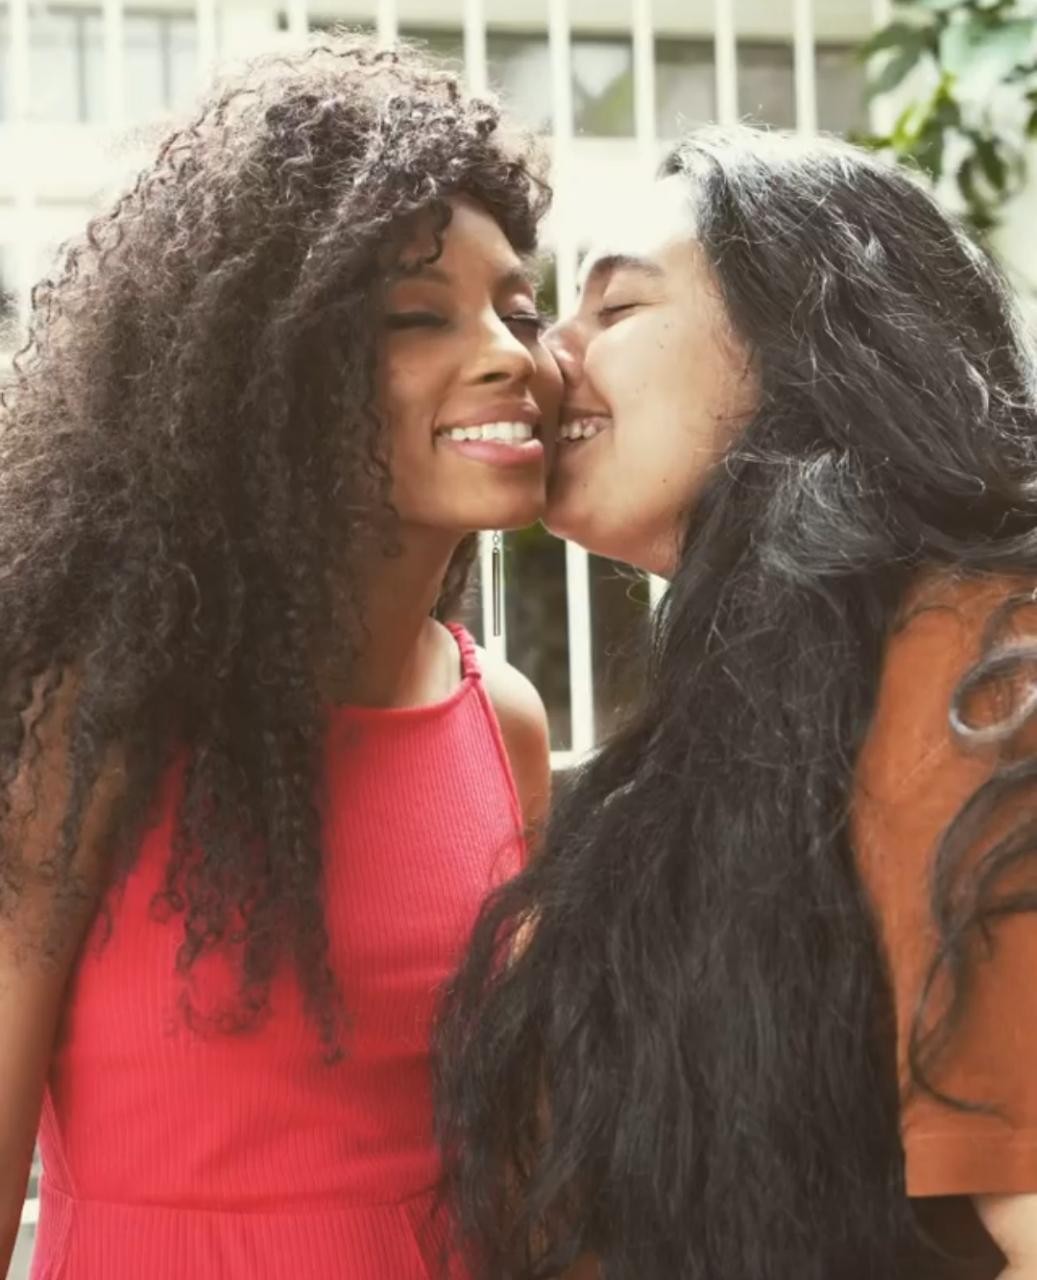 Lumena comemora Dia do Beijo com a namorada (Foto: Reprodução/Instagram)